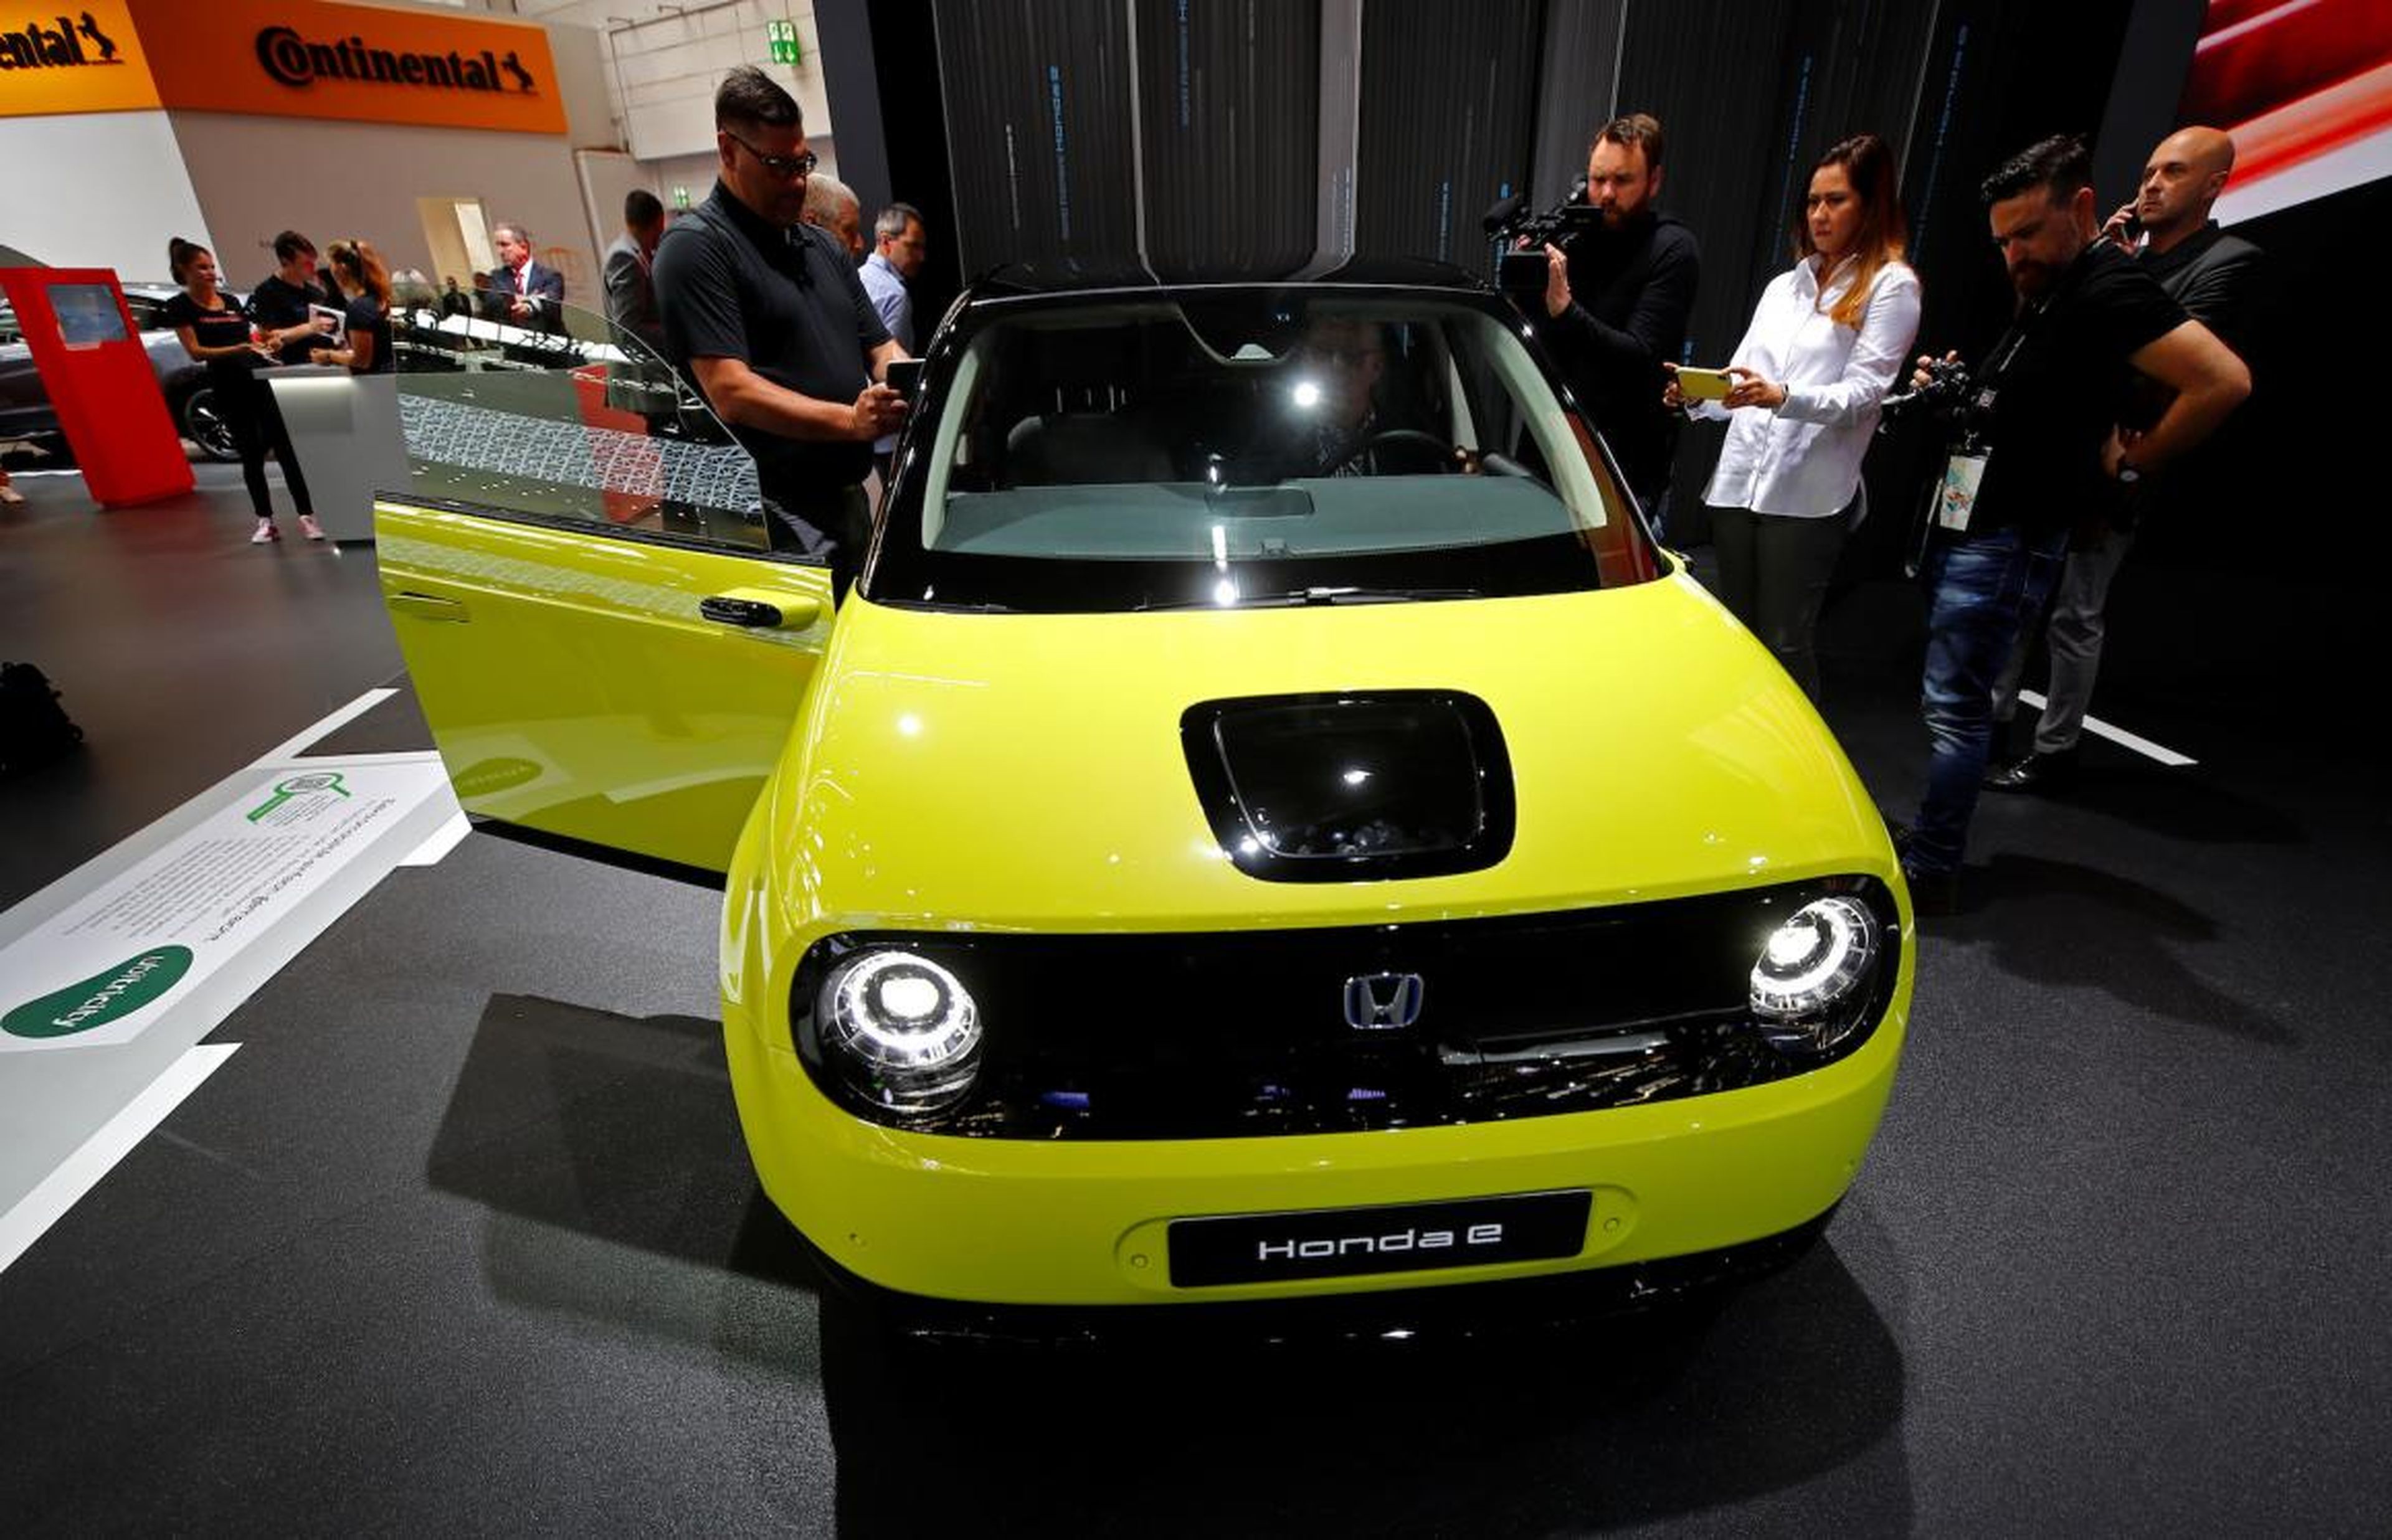 Honda showed is Honda e, a compact electric city car.